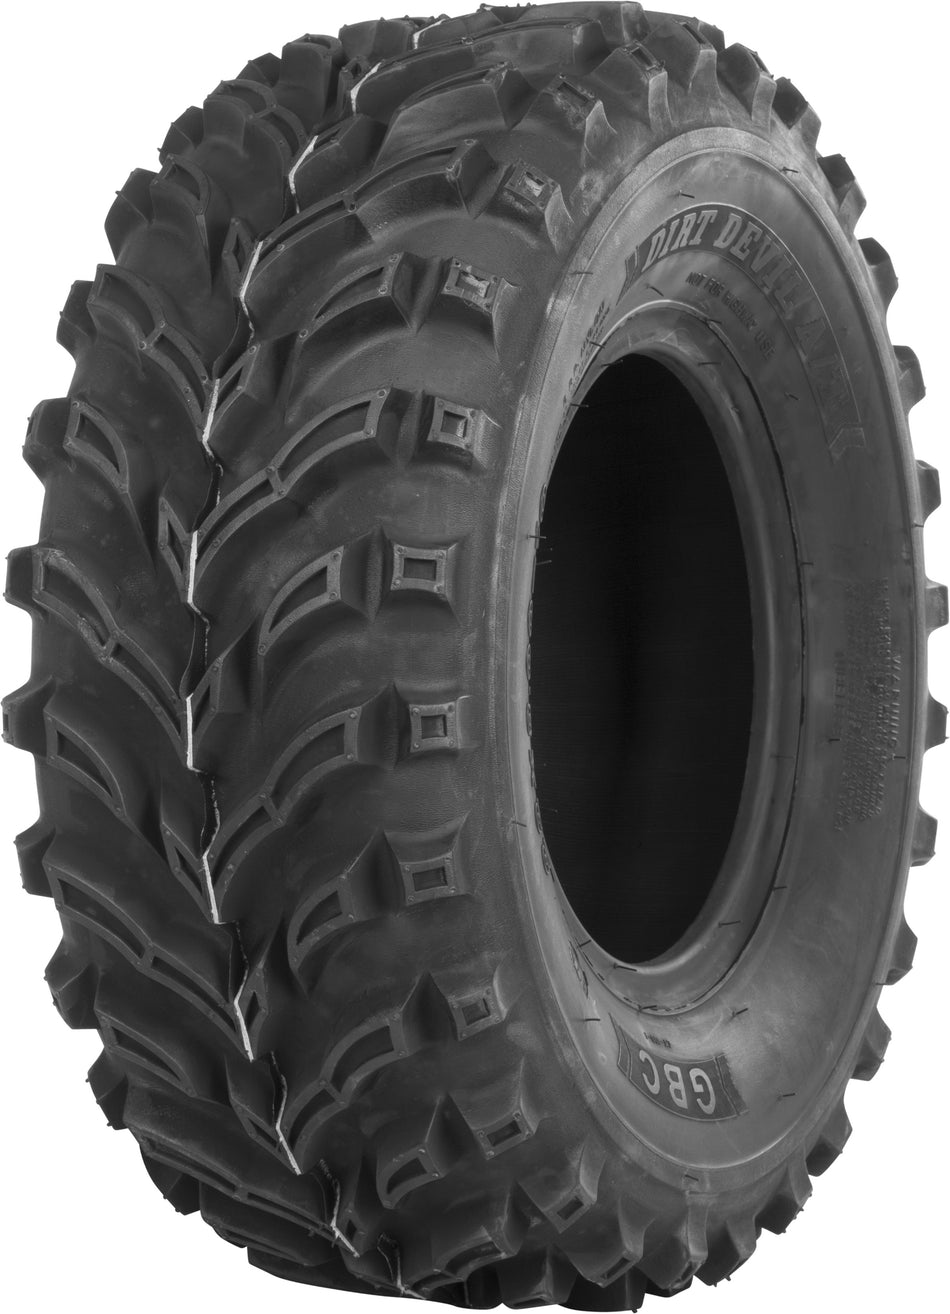 GBC Tire Dirt Devil A/T F/R 24x9-11 Bias Lr-365lbs AR1103